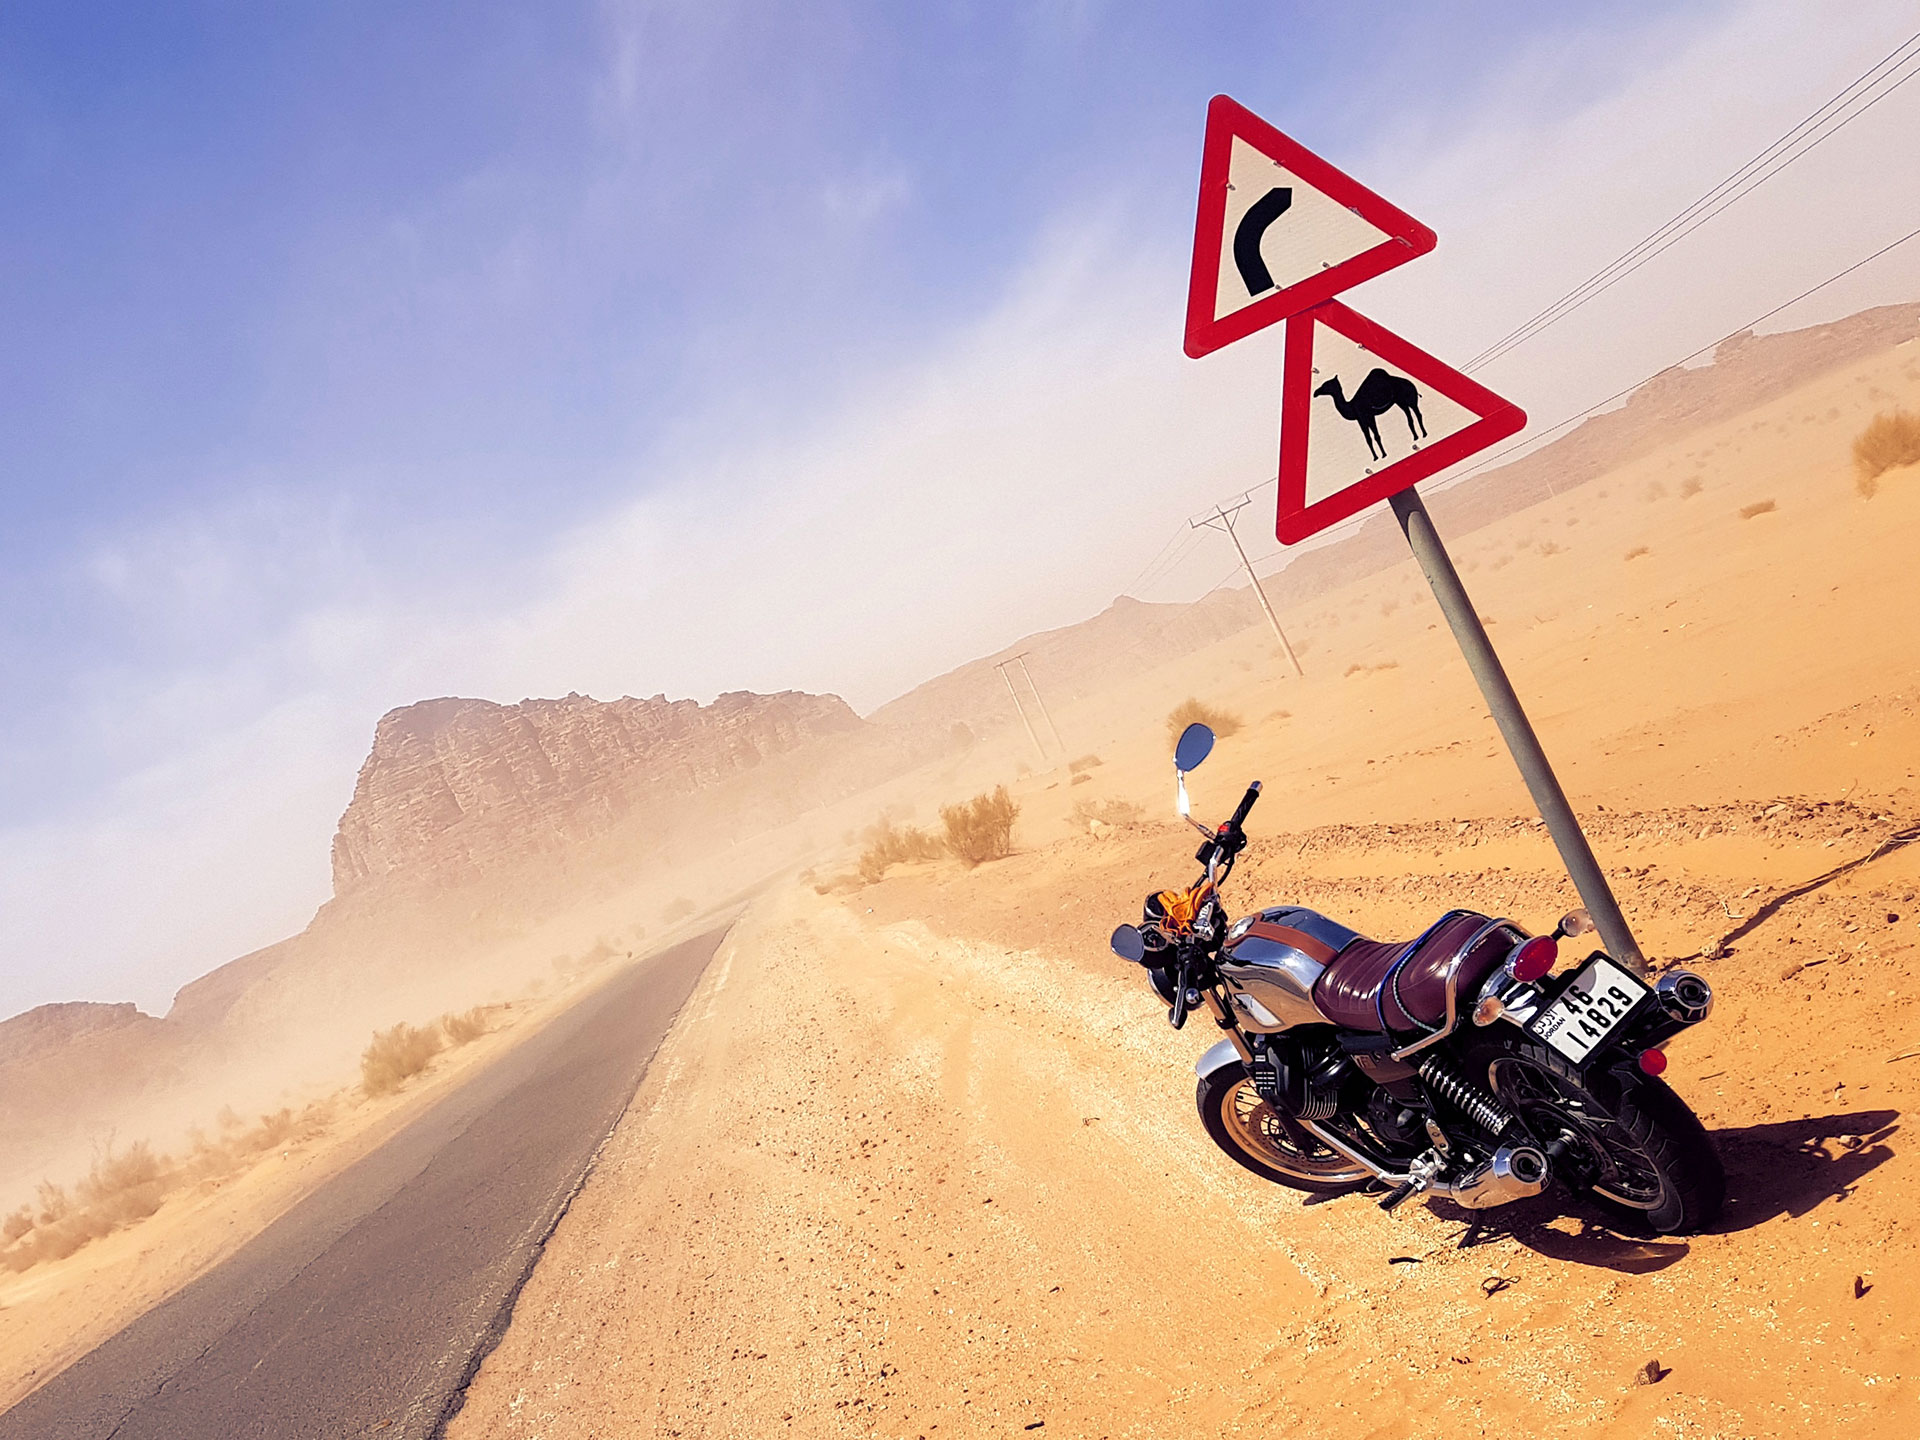 Motorbike by a camel road sign near a mountain in Jordan